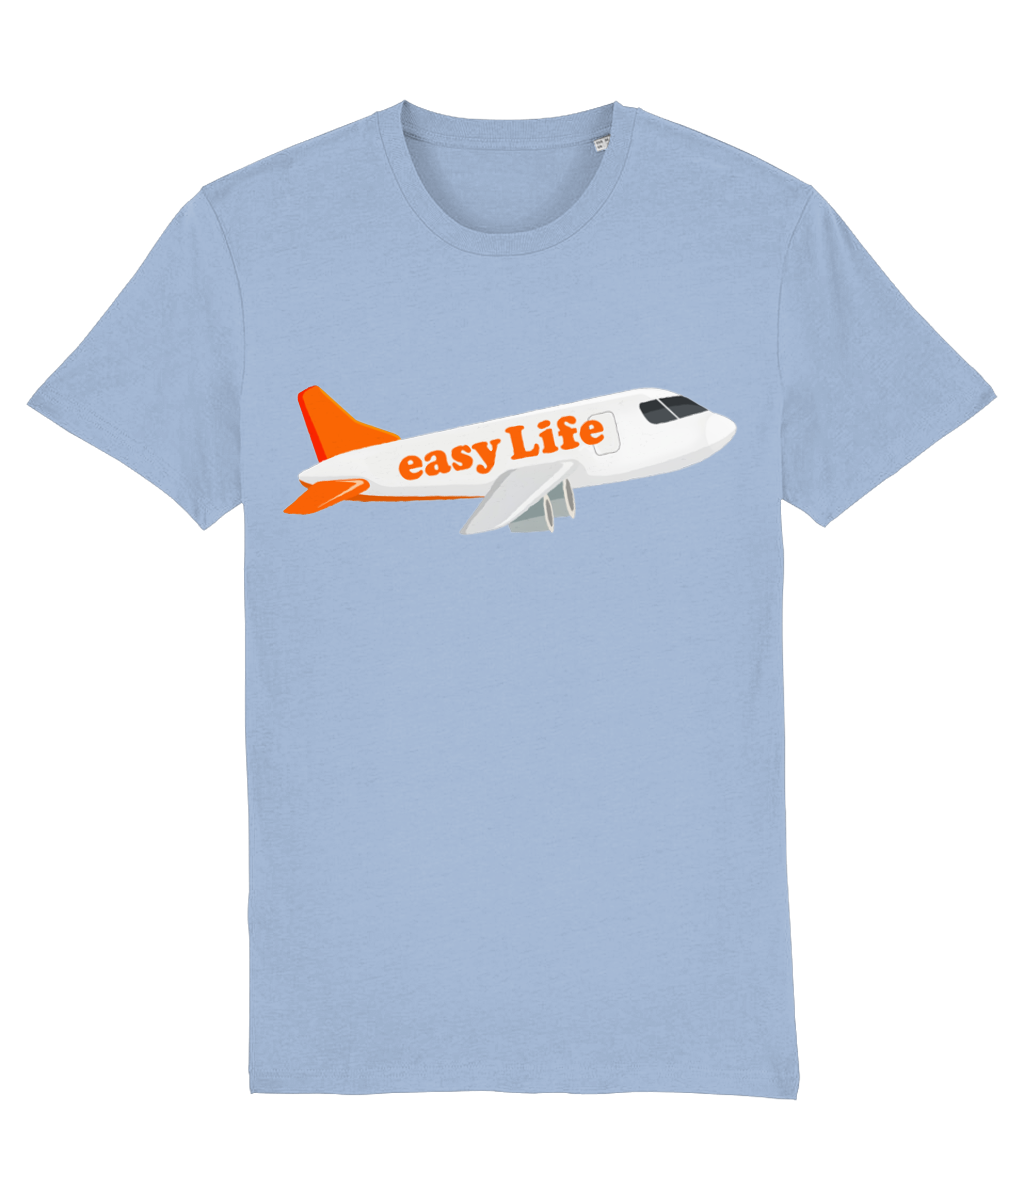 easy Life - Aeroplane